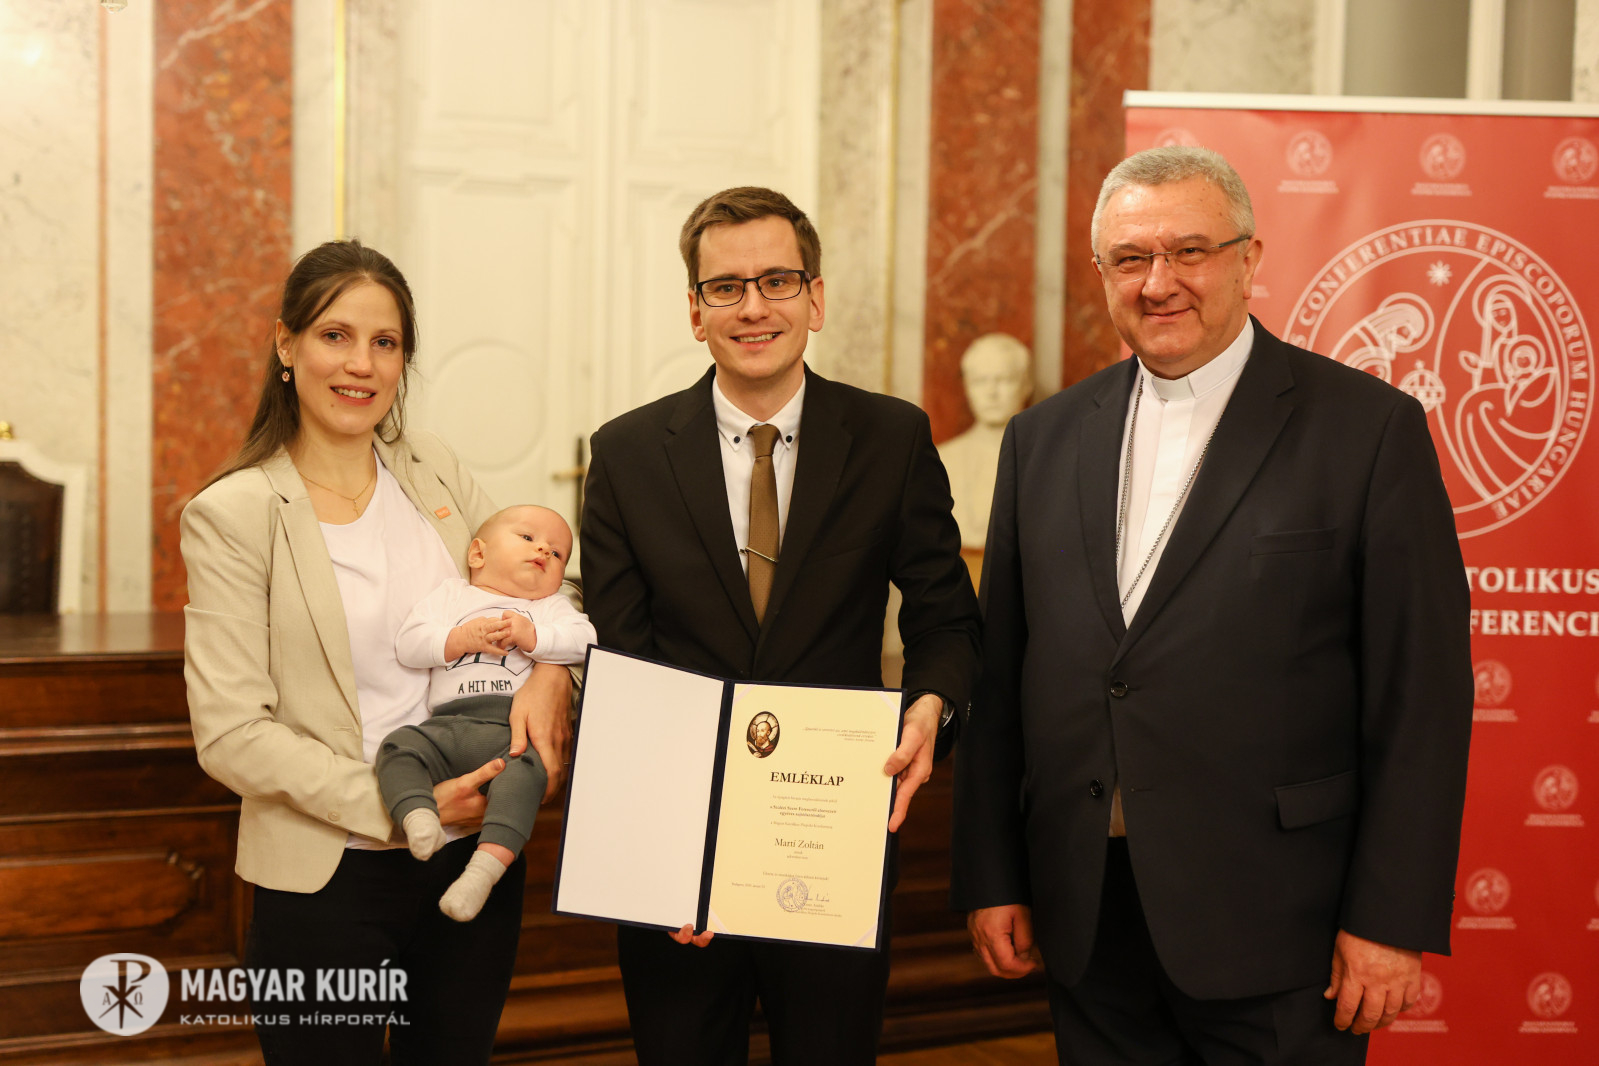 Legyenek a béke hírmondói és eszközei – Martí Zoltán kapta a Szalézi Szent Ferenc-ösztöndíjat